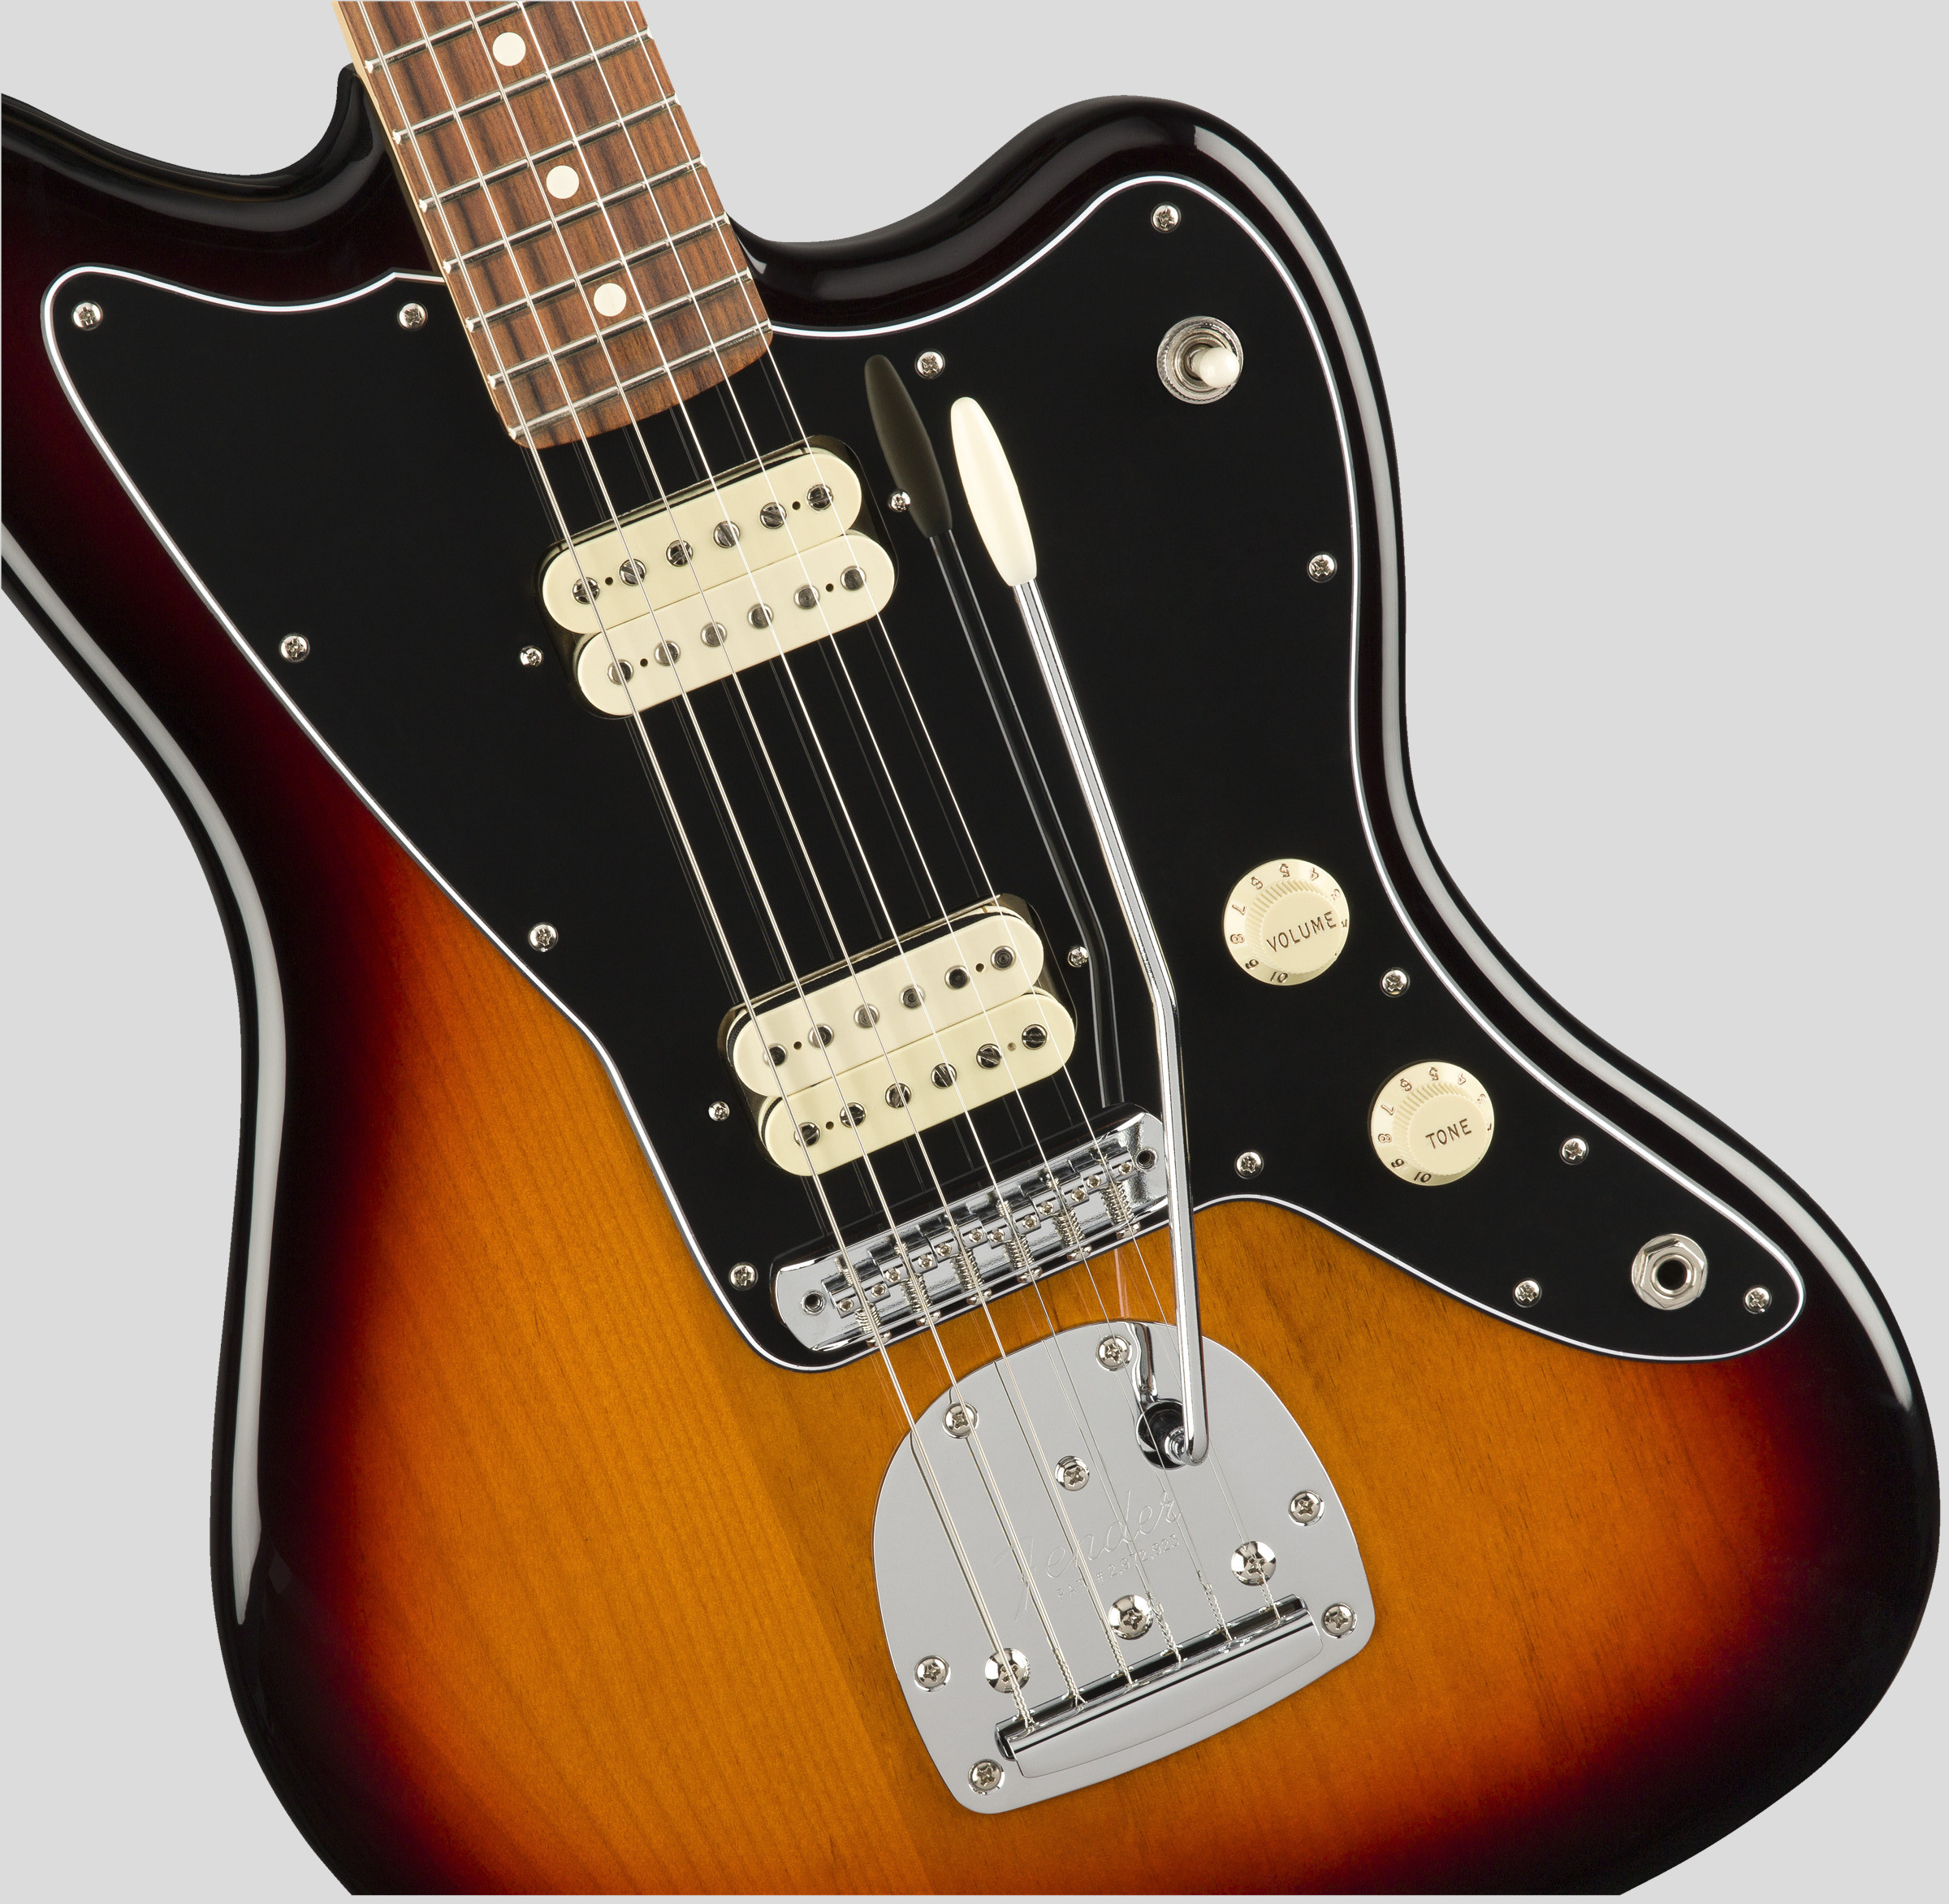 Fender Player Jazzmaster 3-Color Sunburst 4